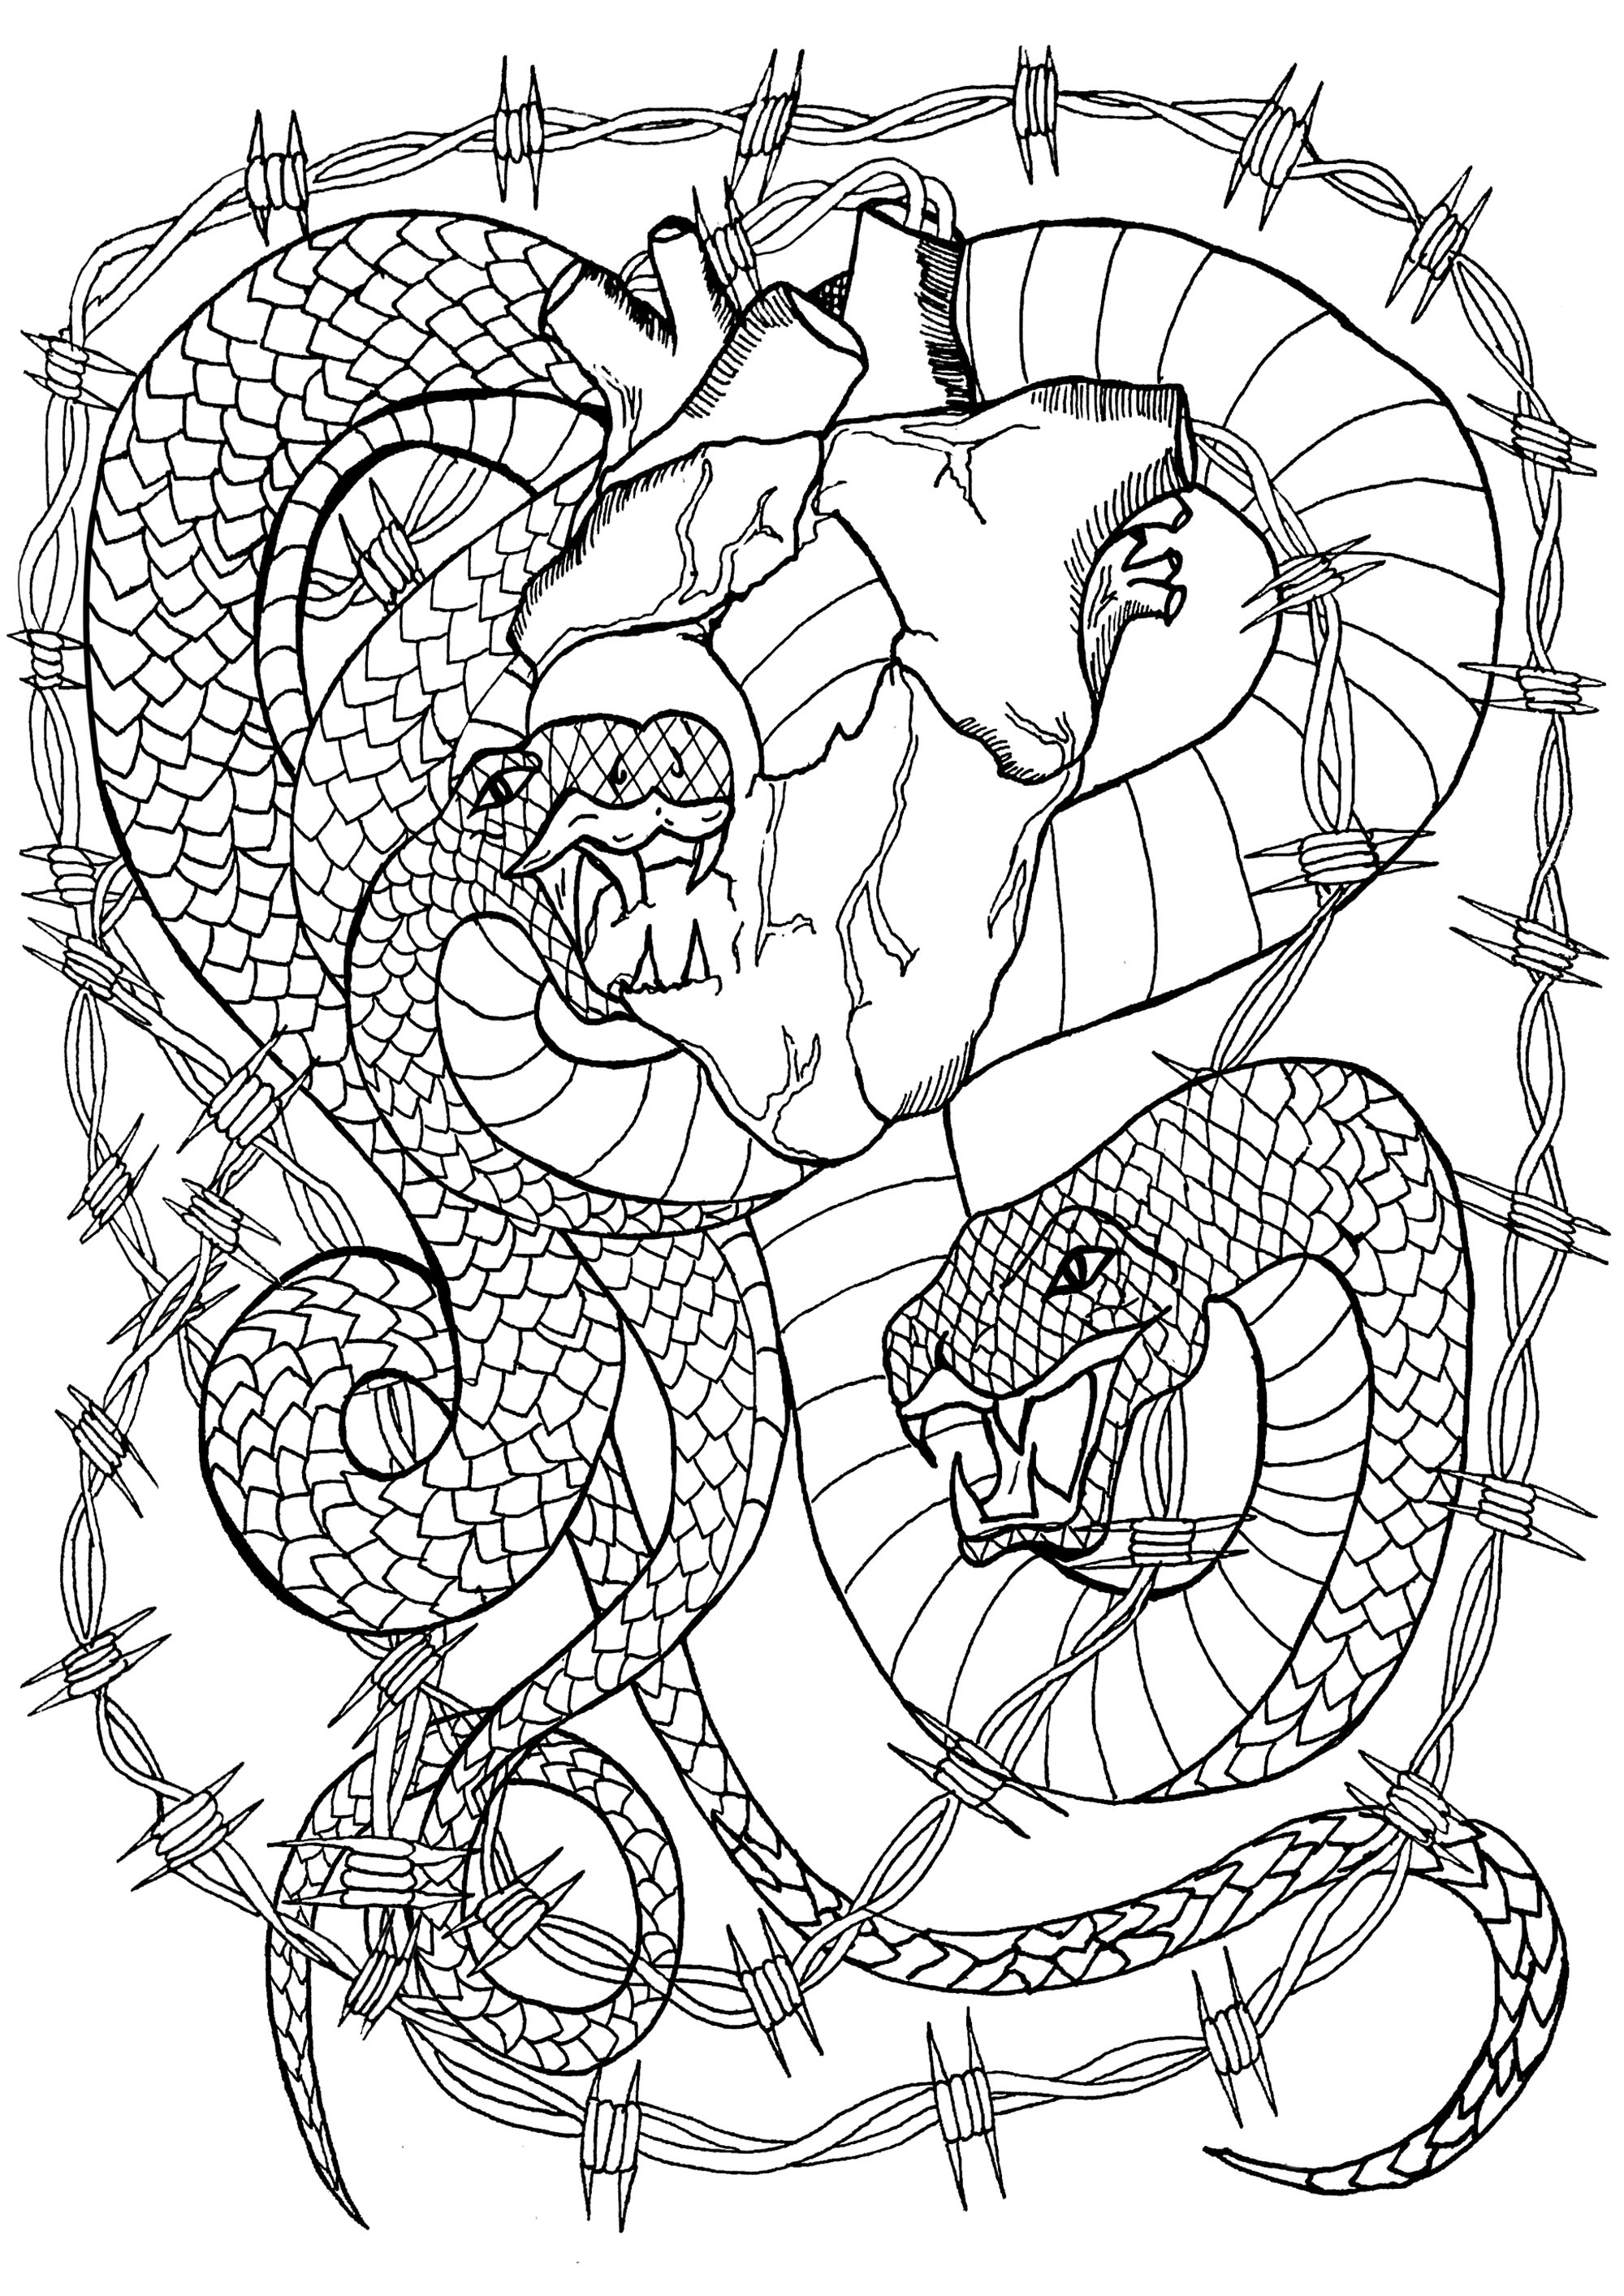 Dos serpientes rodeadas de alambre de espino devorando un corazón que aún late, Artista : Lise